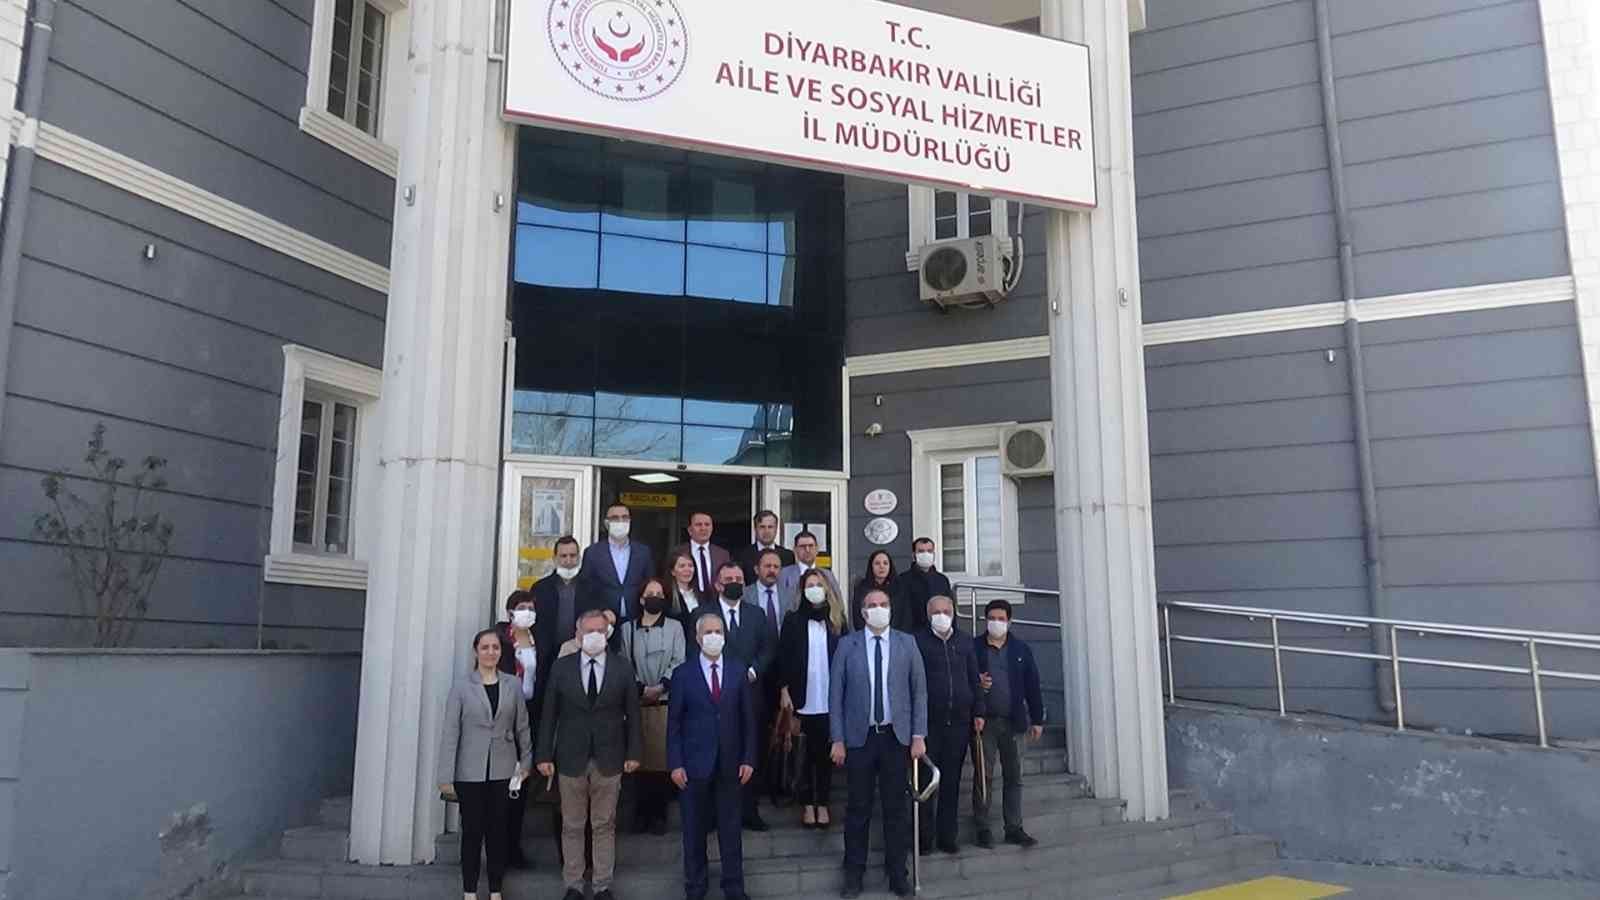 Diyarbakır’da denetlenen bin 24 kurum ve kuruluştan 37’sine ’erişilebilirlik logosu’ verildi #diyarbakir